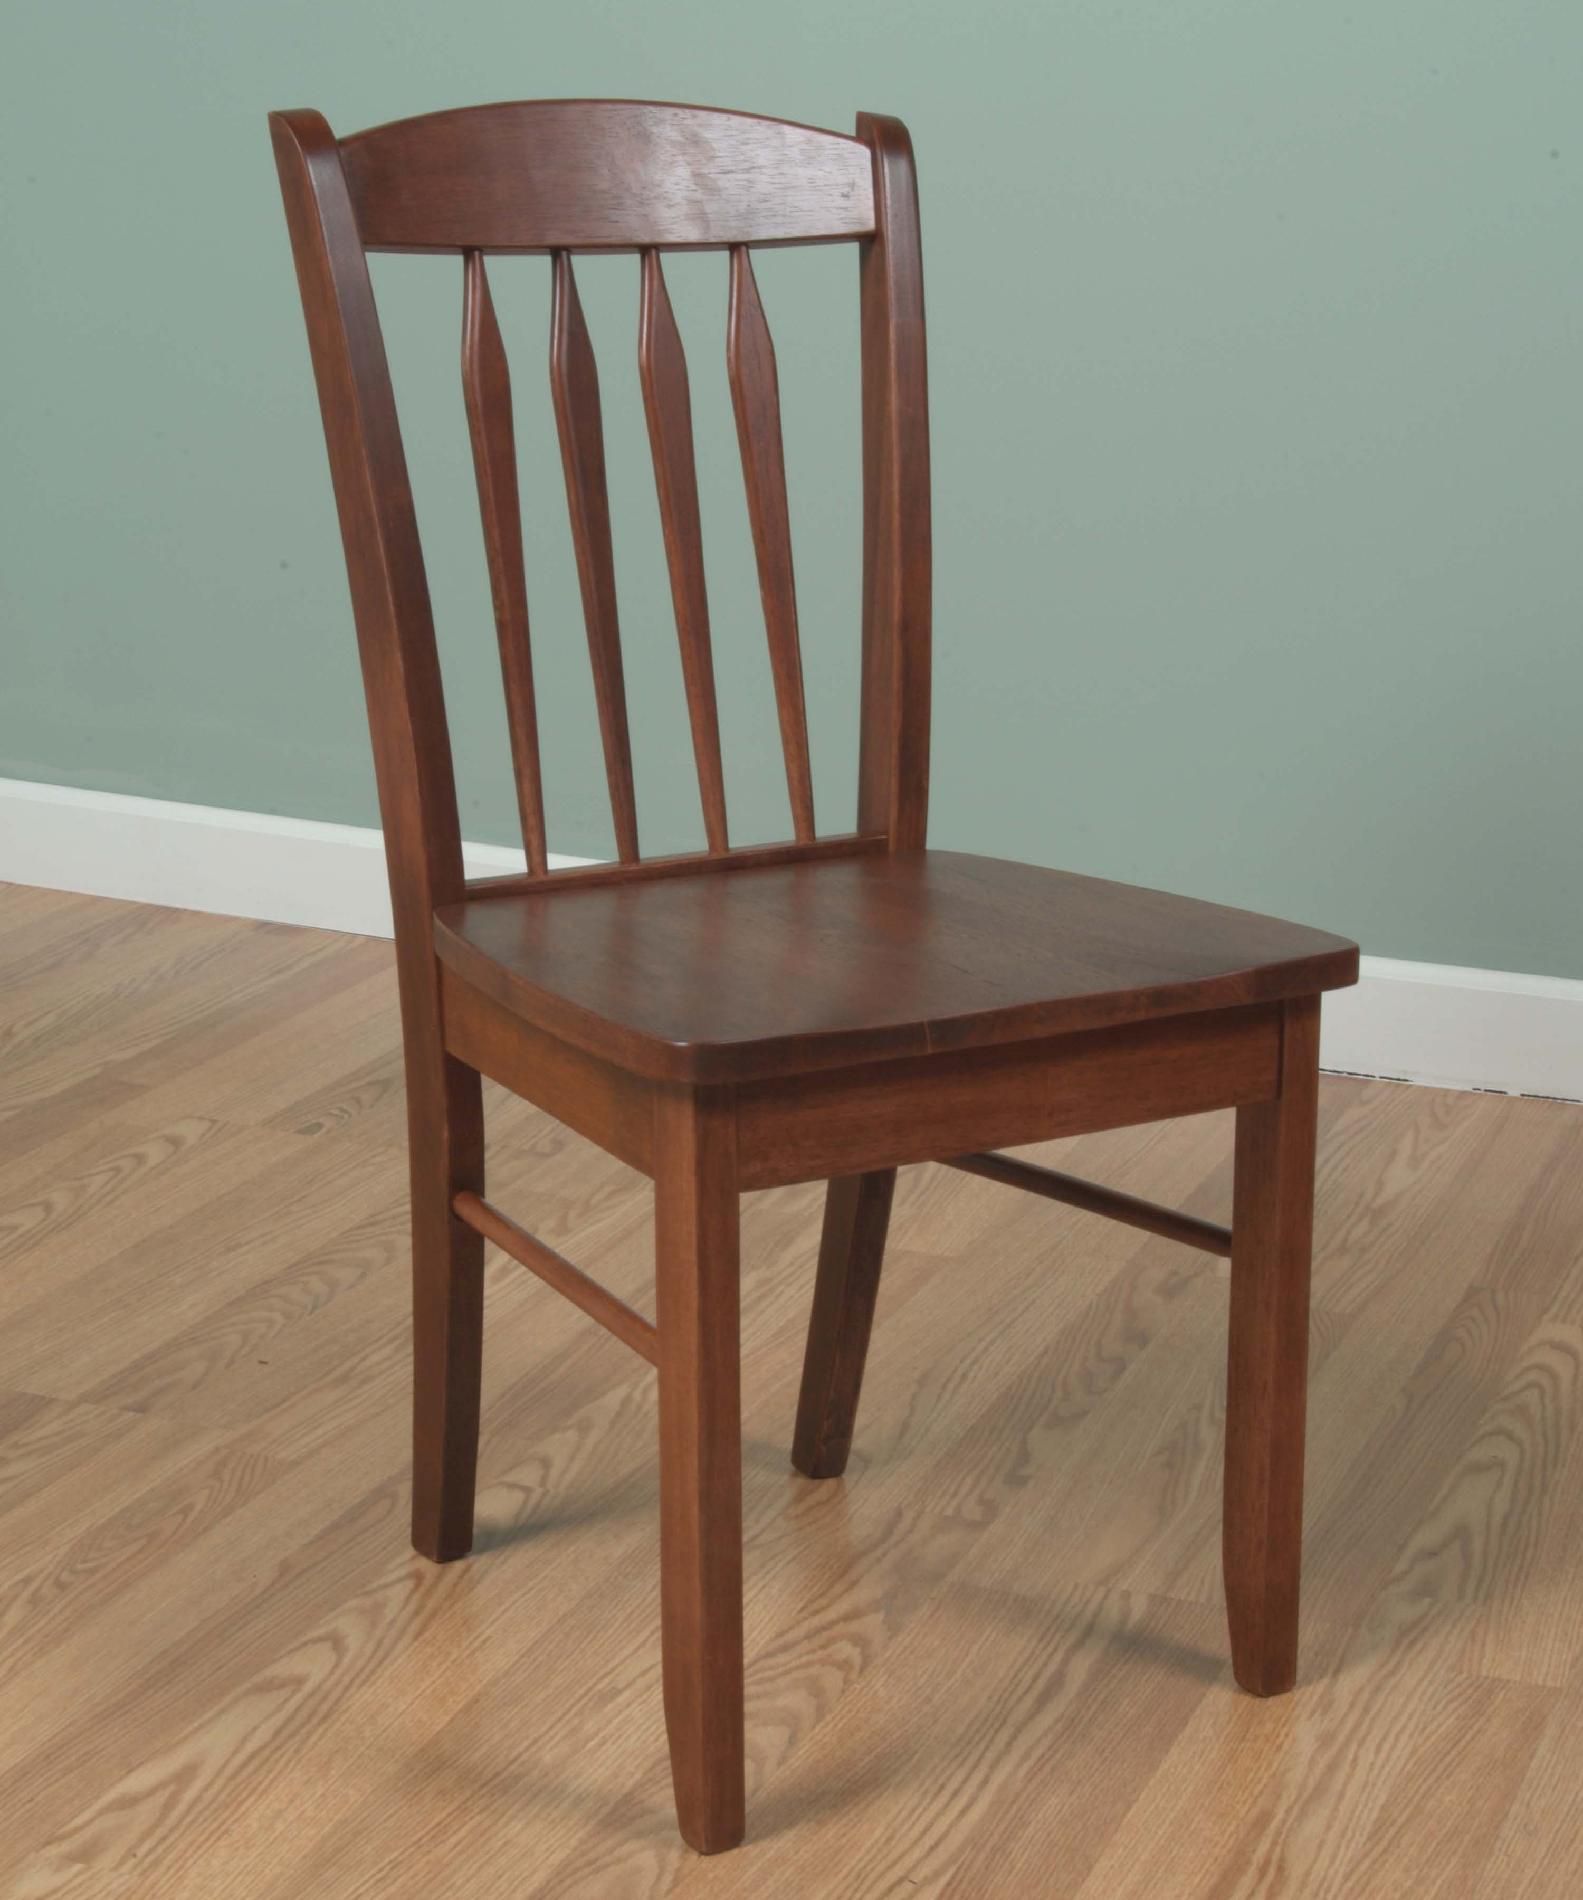 TMS Savannah chair